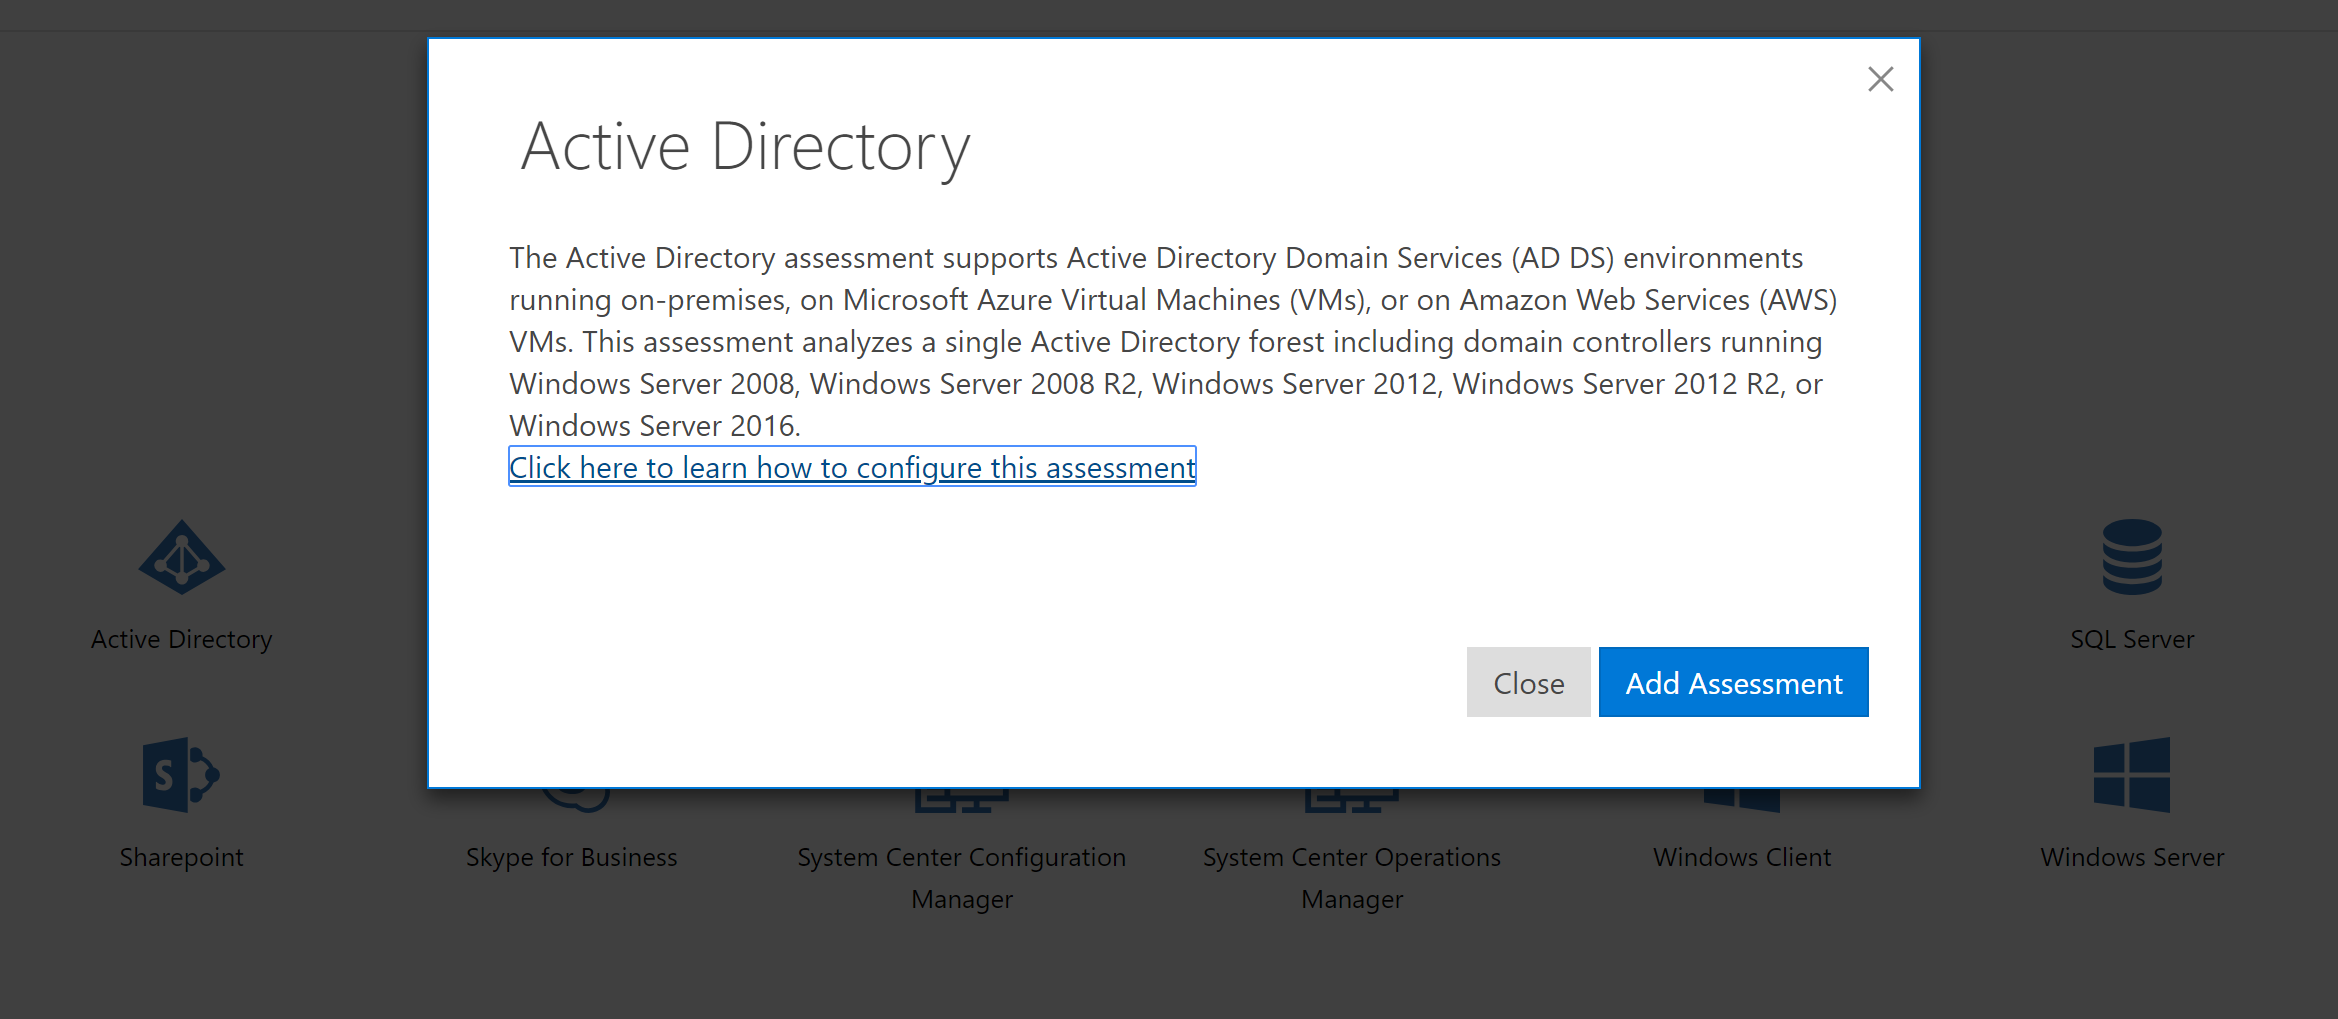 Descripción de la evaluación de Active Directory para ser compatible con entornos de servicio de Entra ID.